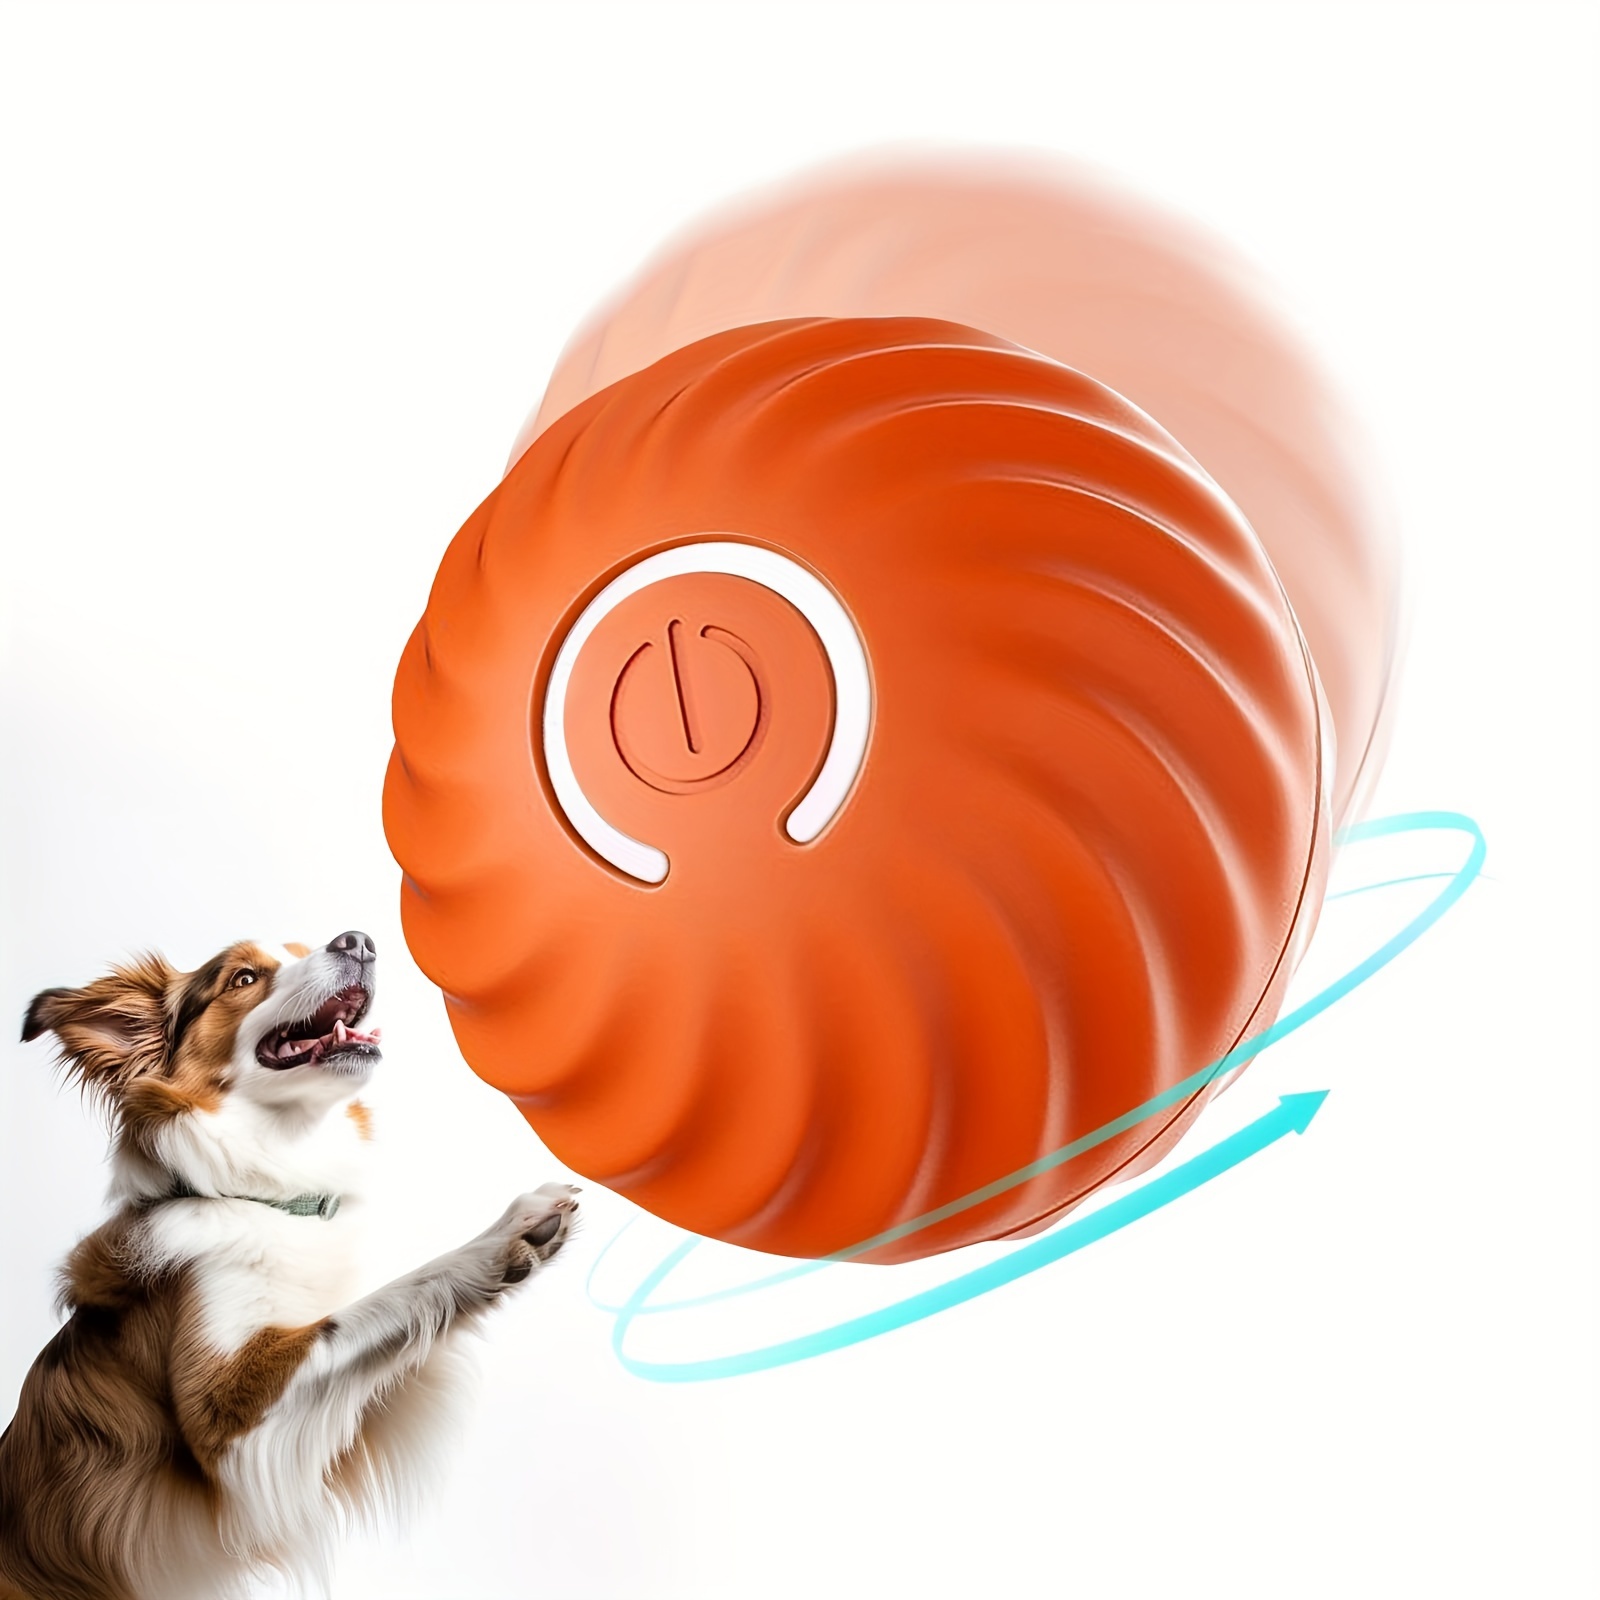 Comprar Juguetes interactivos para perros, pelota rodante eléctrica  duradera con Control remoto, juguetes para perros y gatos, juguetes para  cachorros/perros pequeños/medianos